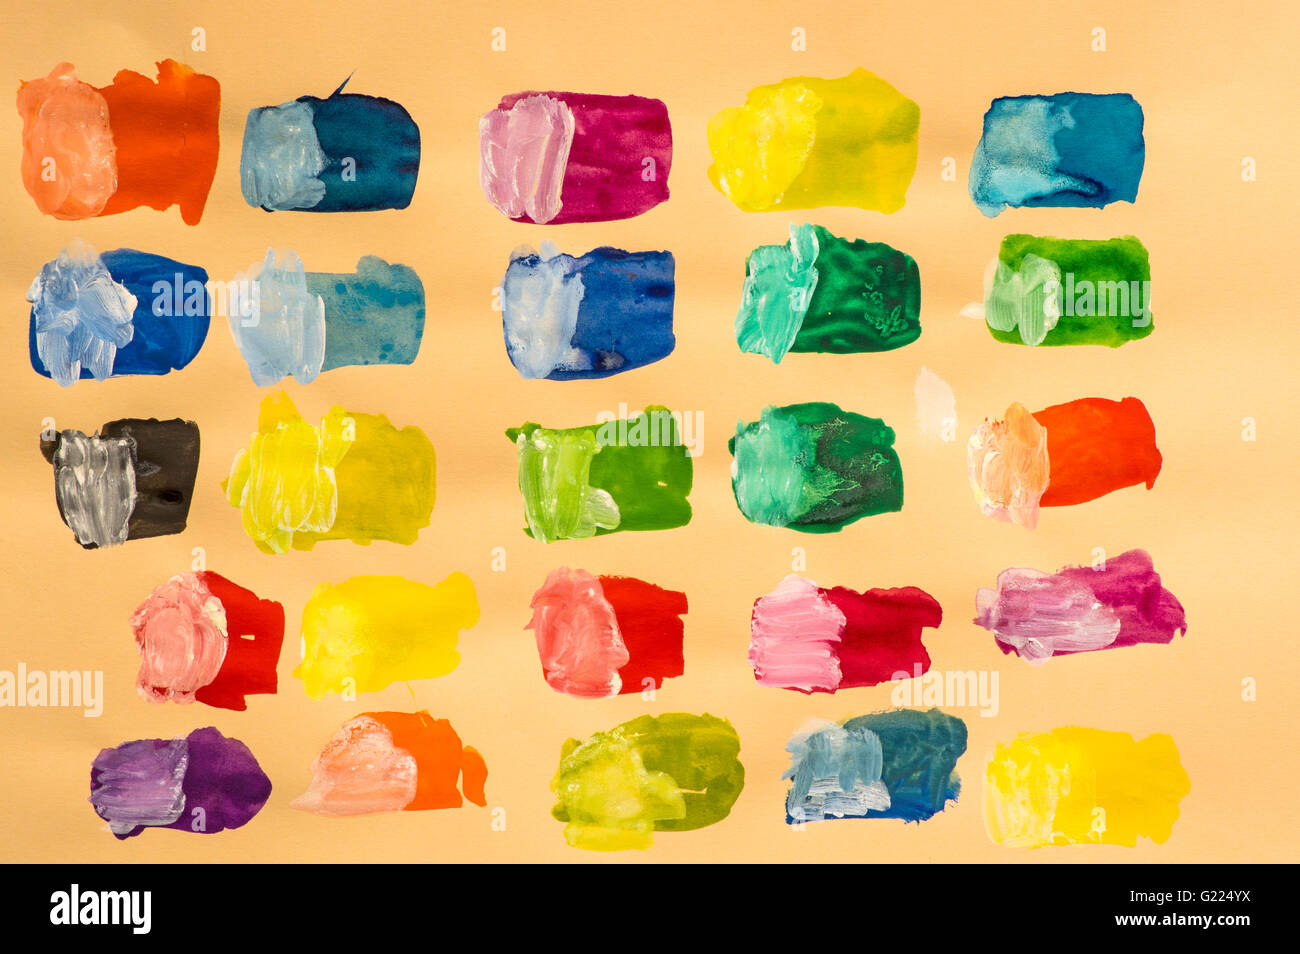 L'artista ha dipinto le piazze della sua nuova acqua colori per vedere come appaiono quindi miscelata a metà con il bianco per lo stesso motivo. Foto Stock